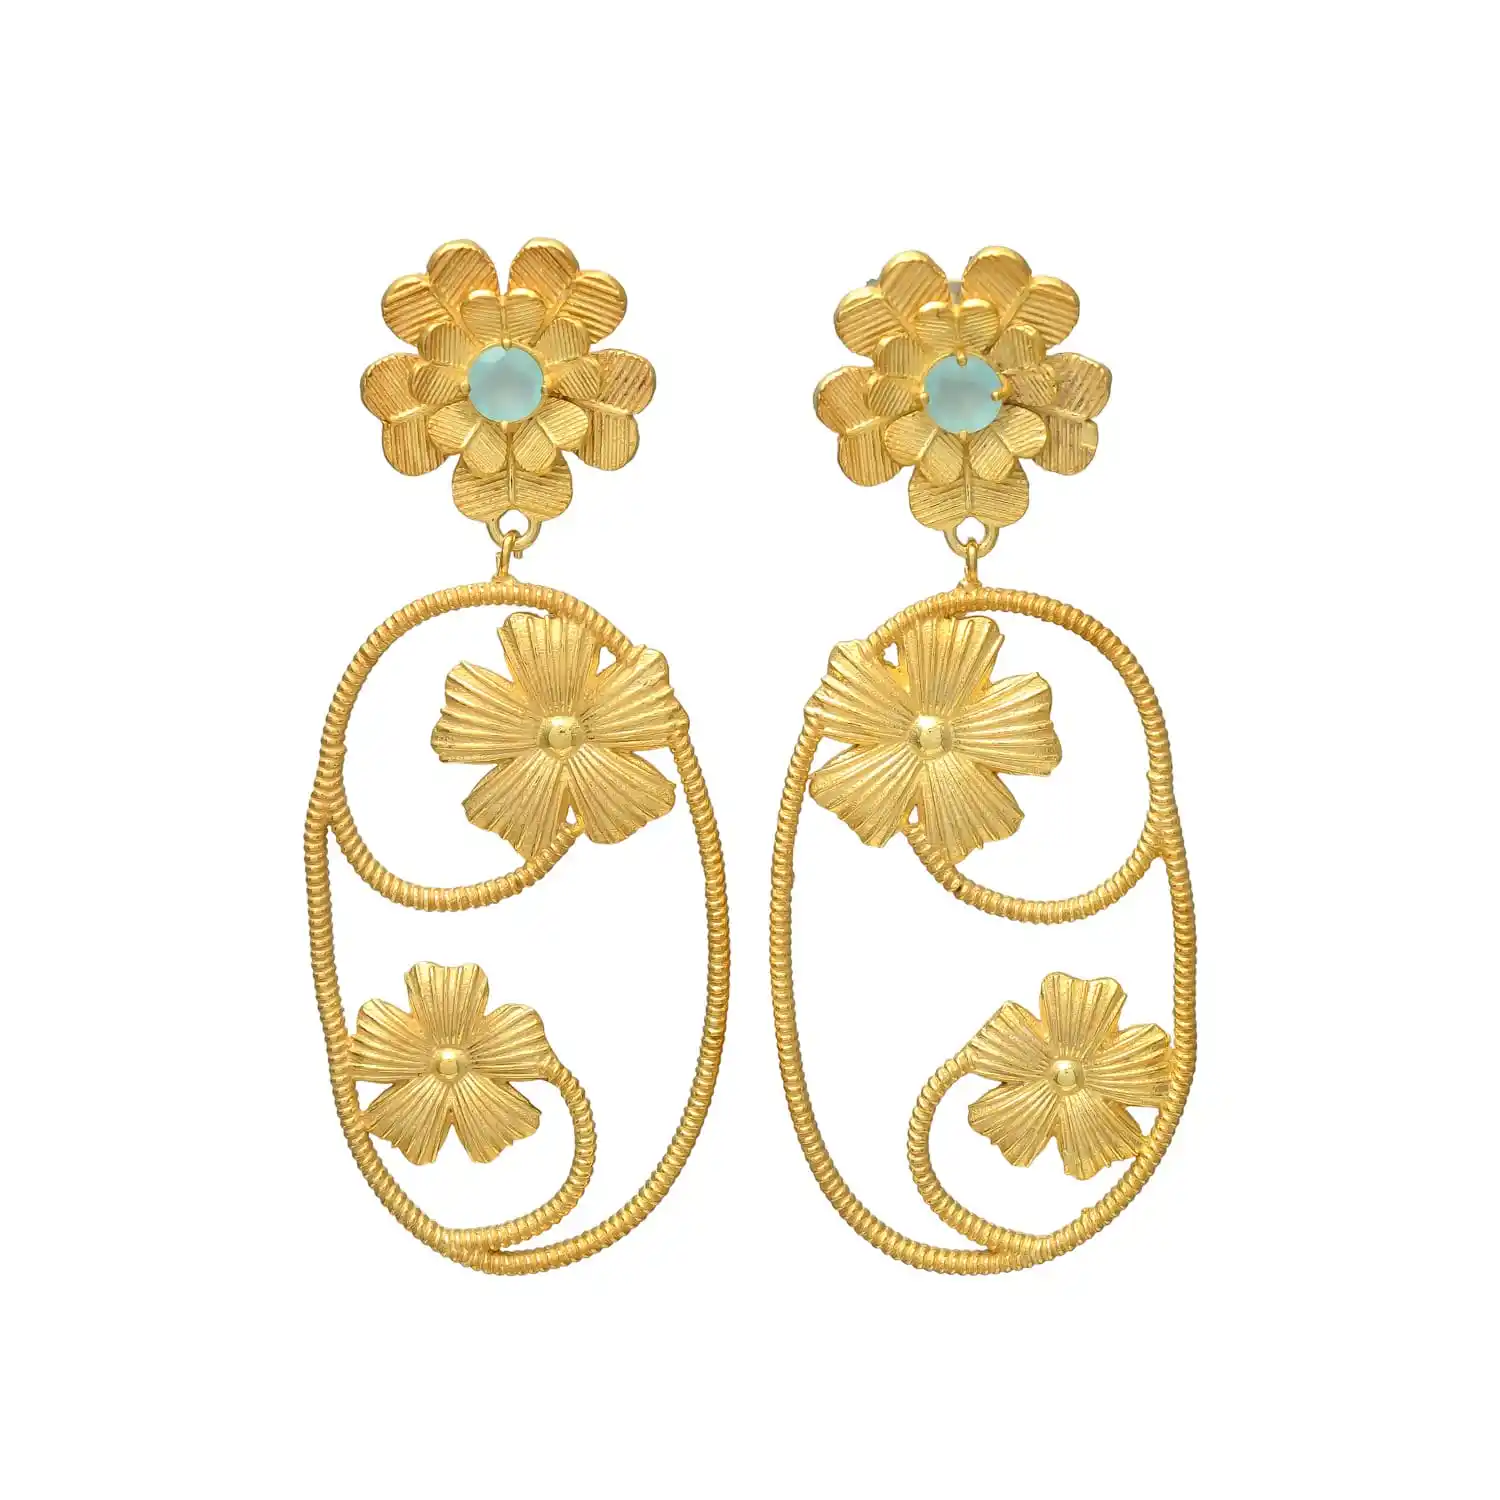 Orecchini turchese in oro floreale. Realizzato con intricati disegni di fiori e adornato con belle pietre turchesi